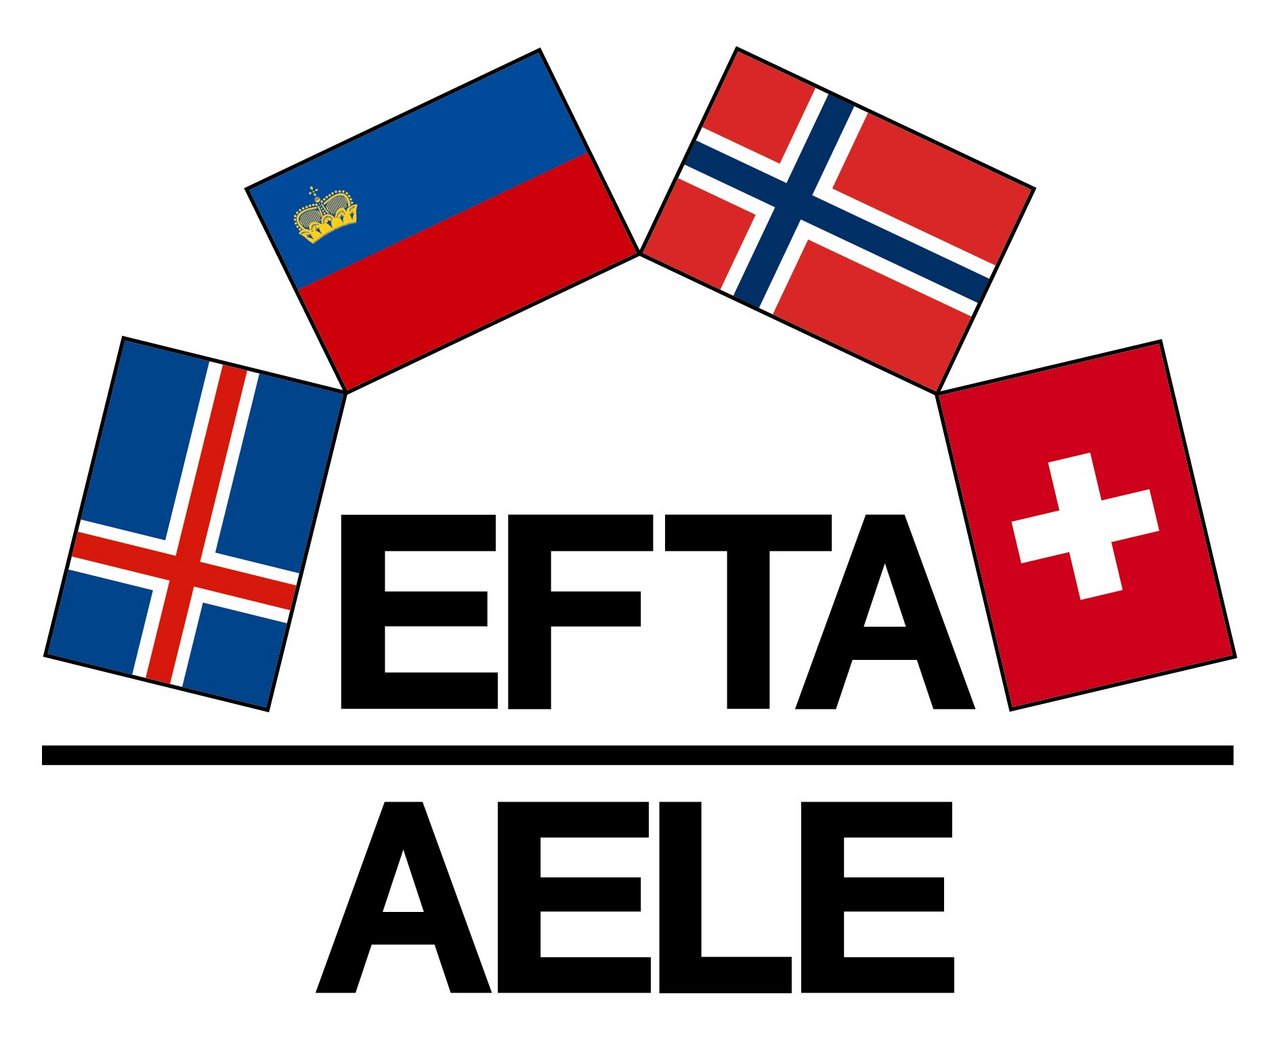 Das Logo der Efta: Die Europäische Freihandelsassoziation (englisch European Free Trade Association, EFTA; französisch Association européenne de libre-échange, AELE) wurde am 4. Januar 1960 im schwedischen Stockholm gegründet. (Bild SECO)